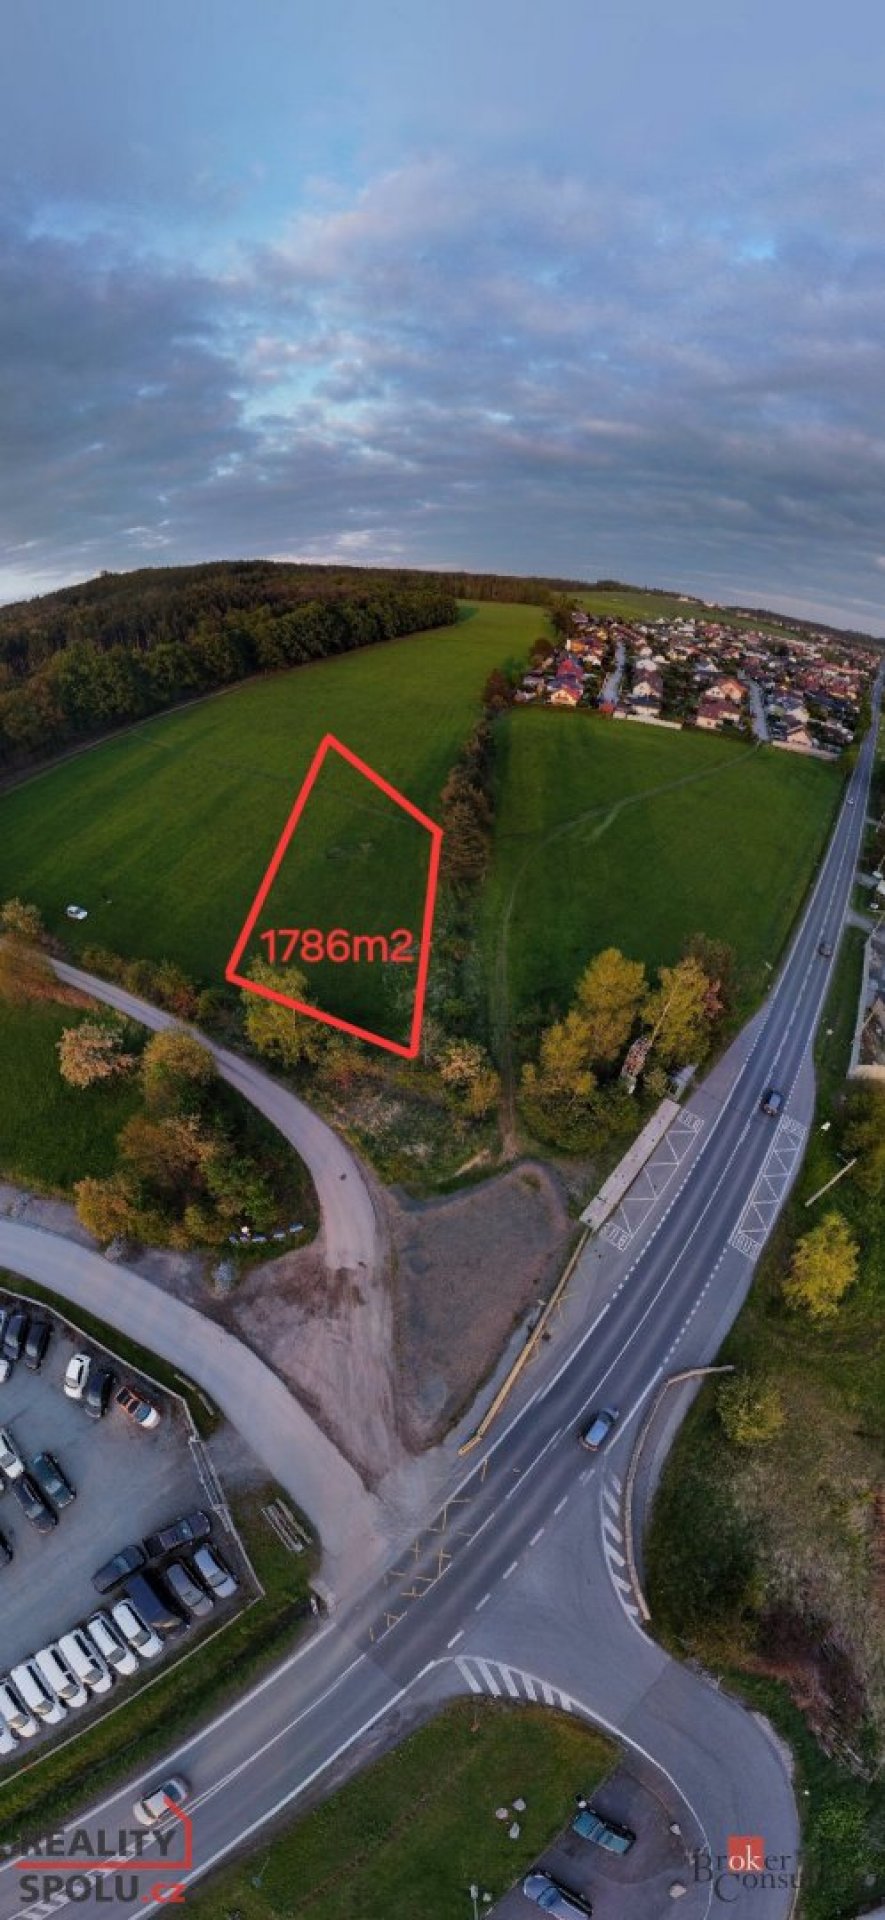 Prodej komerčního pozemku o velikosti 1786 m2 v Losiné u Plzně